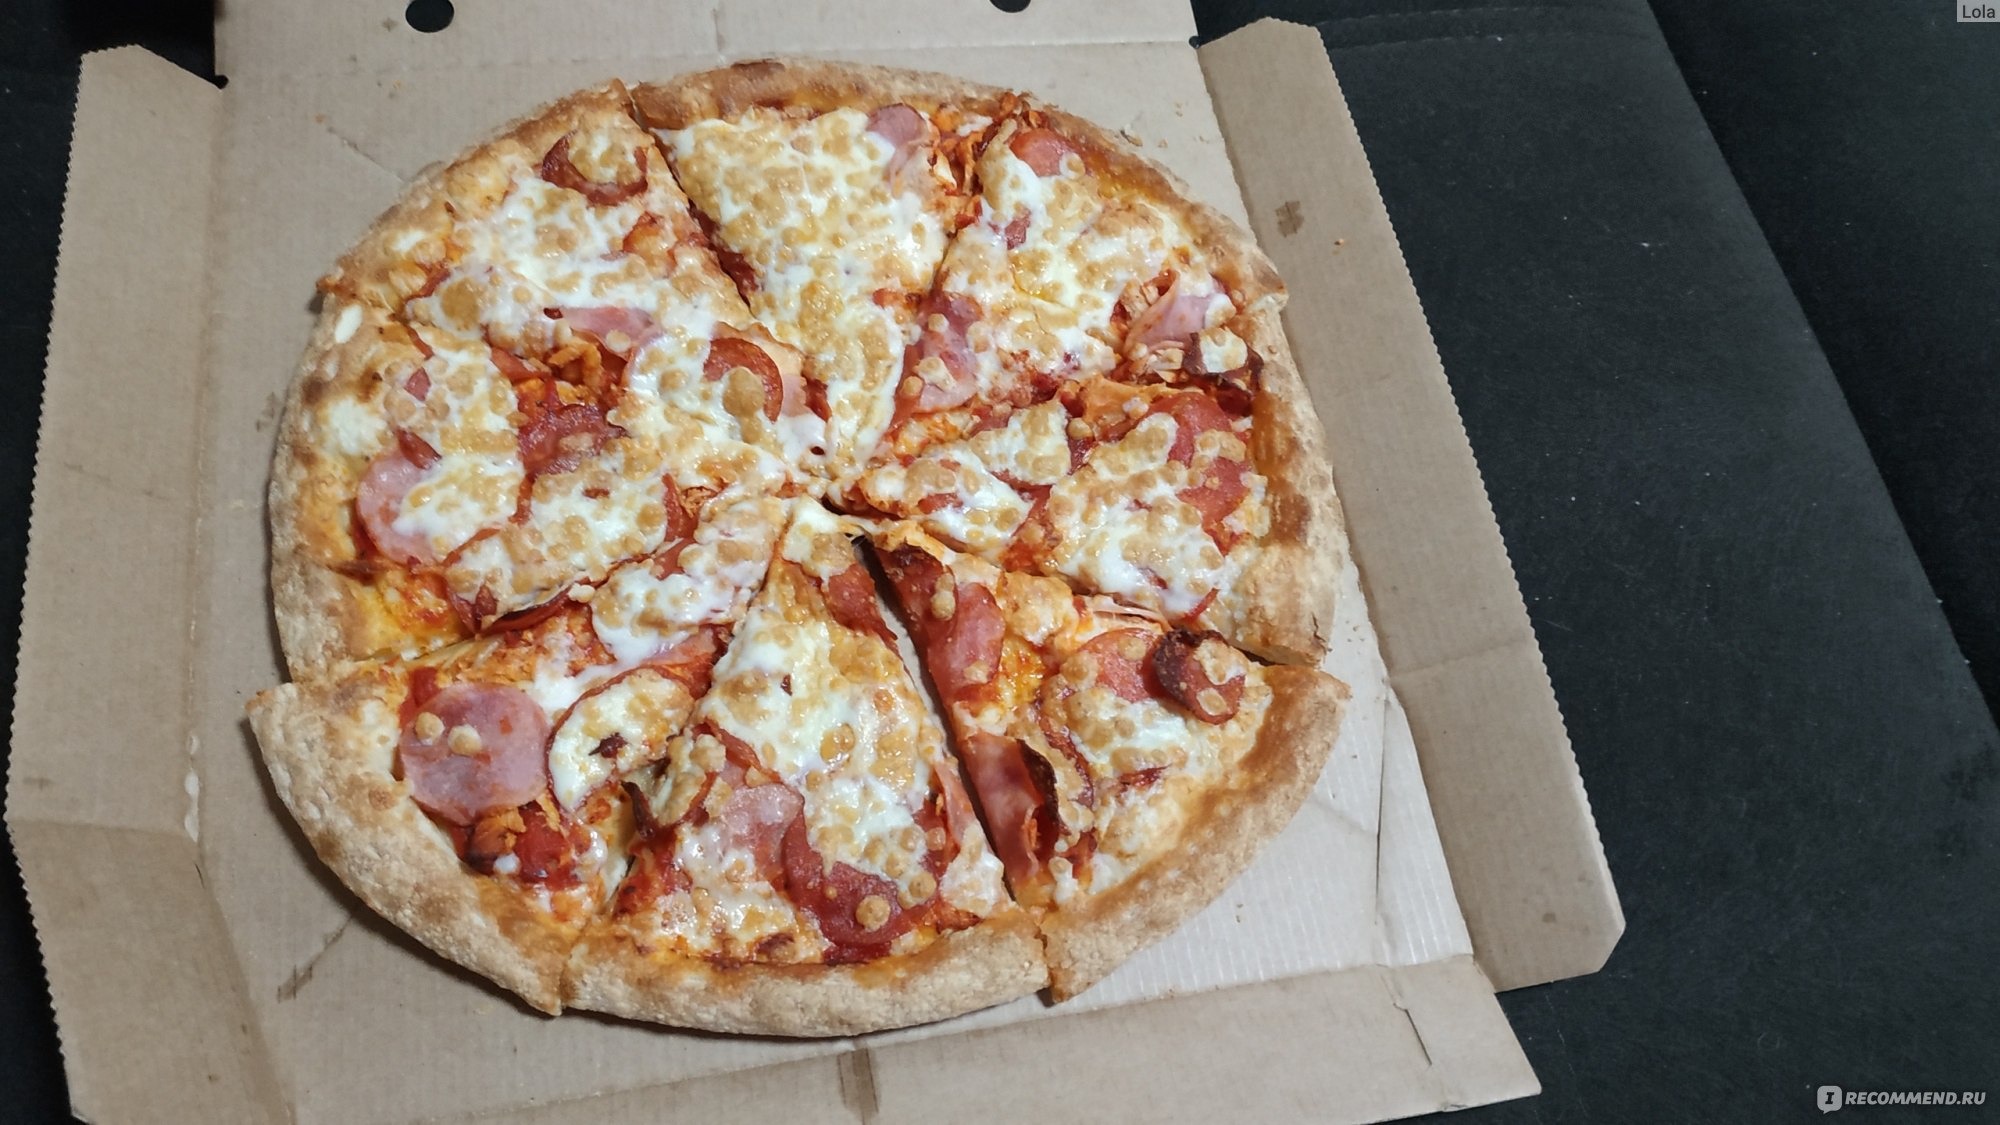 Додо пицца 2011